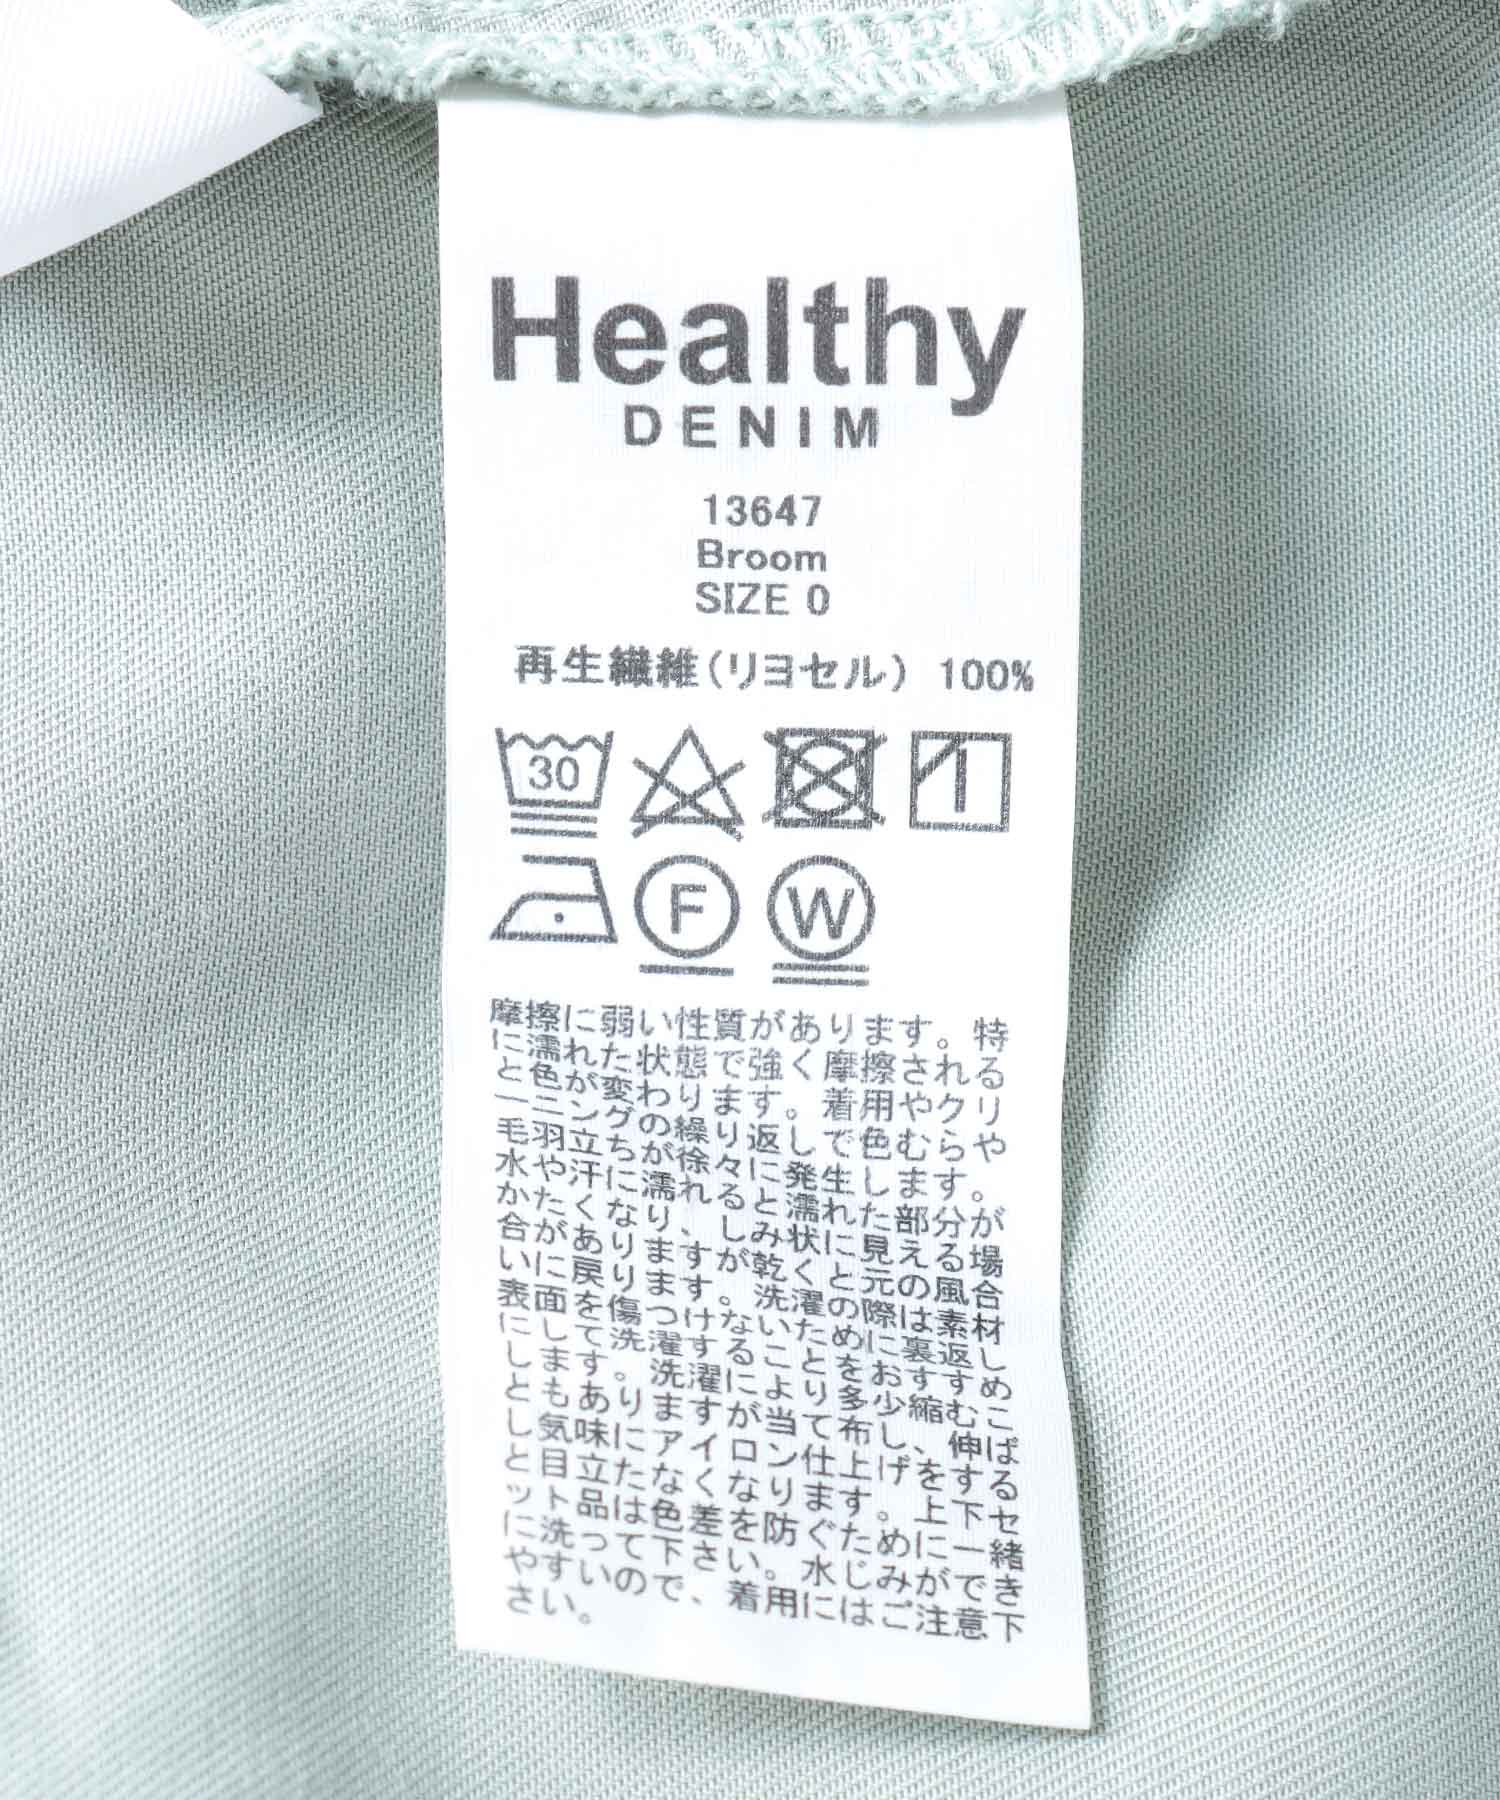 ボリュームマキシワンピースBroom【Healthy Denim/ヘルシーデニム】